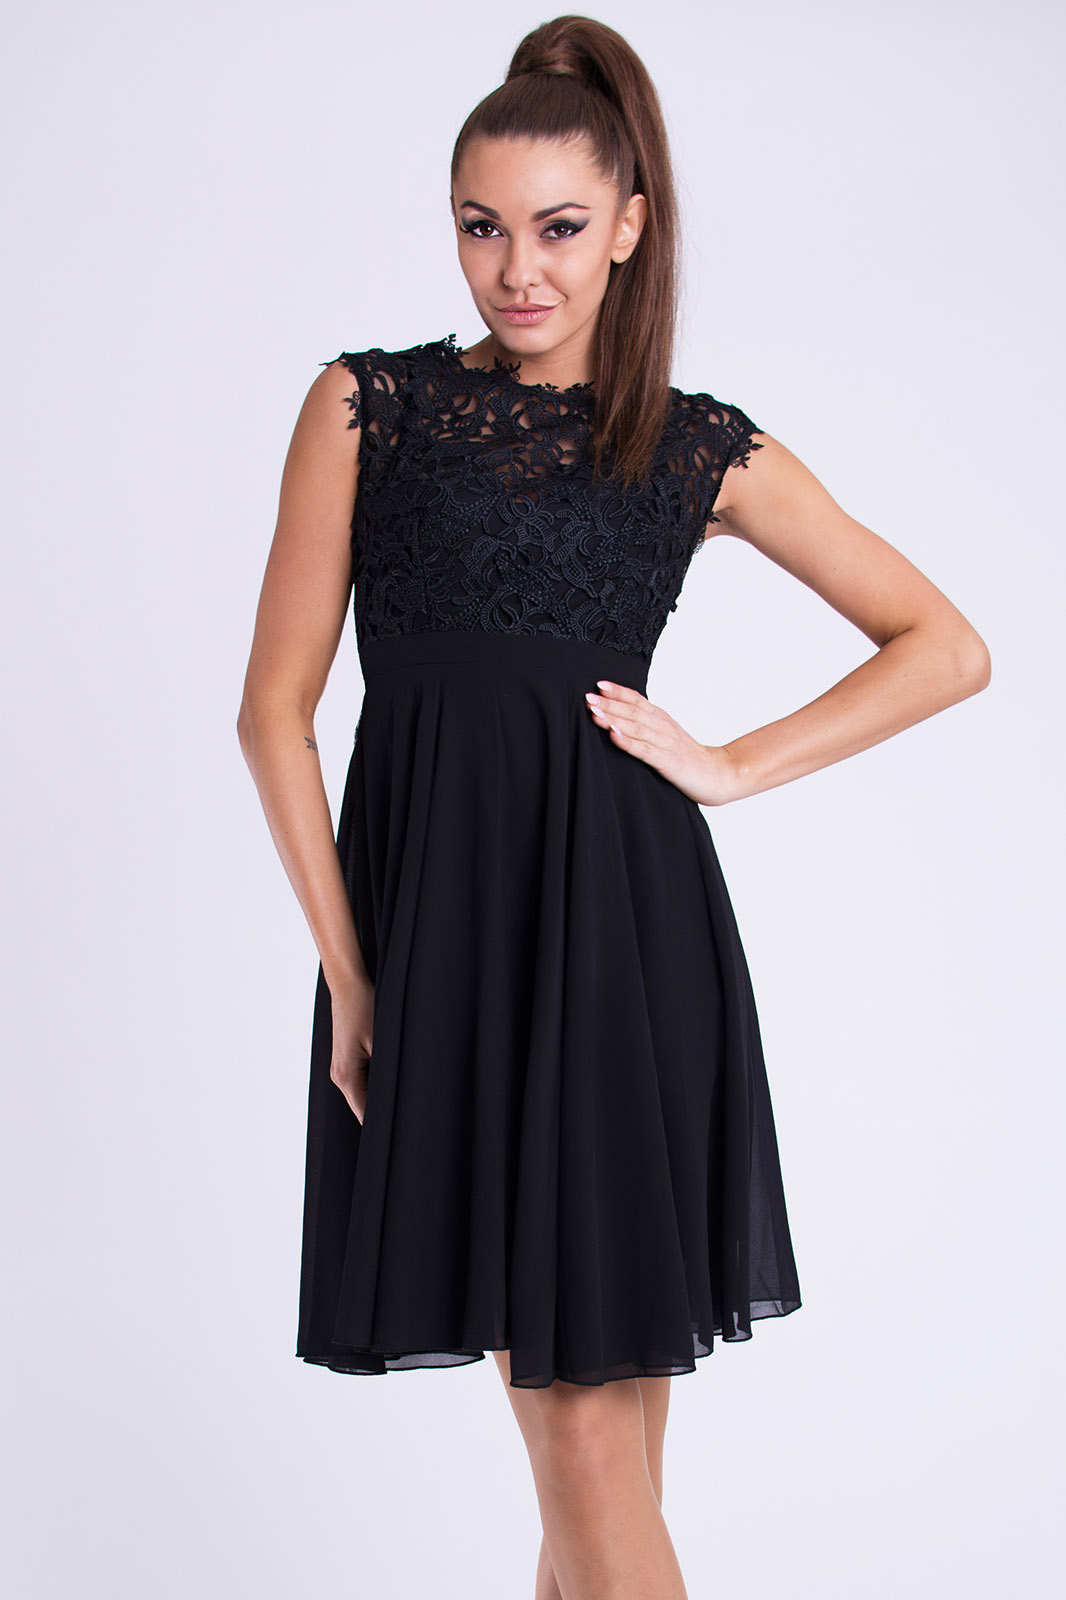 Dámské společenské šaty Maëlys s krajkou černá (Dámské šaty)